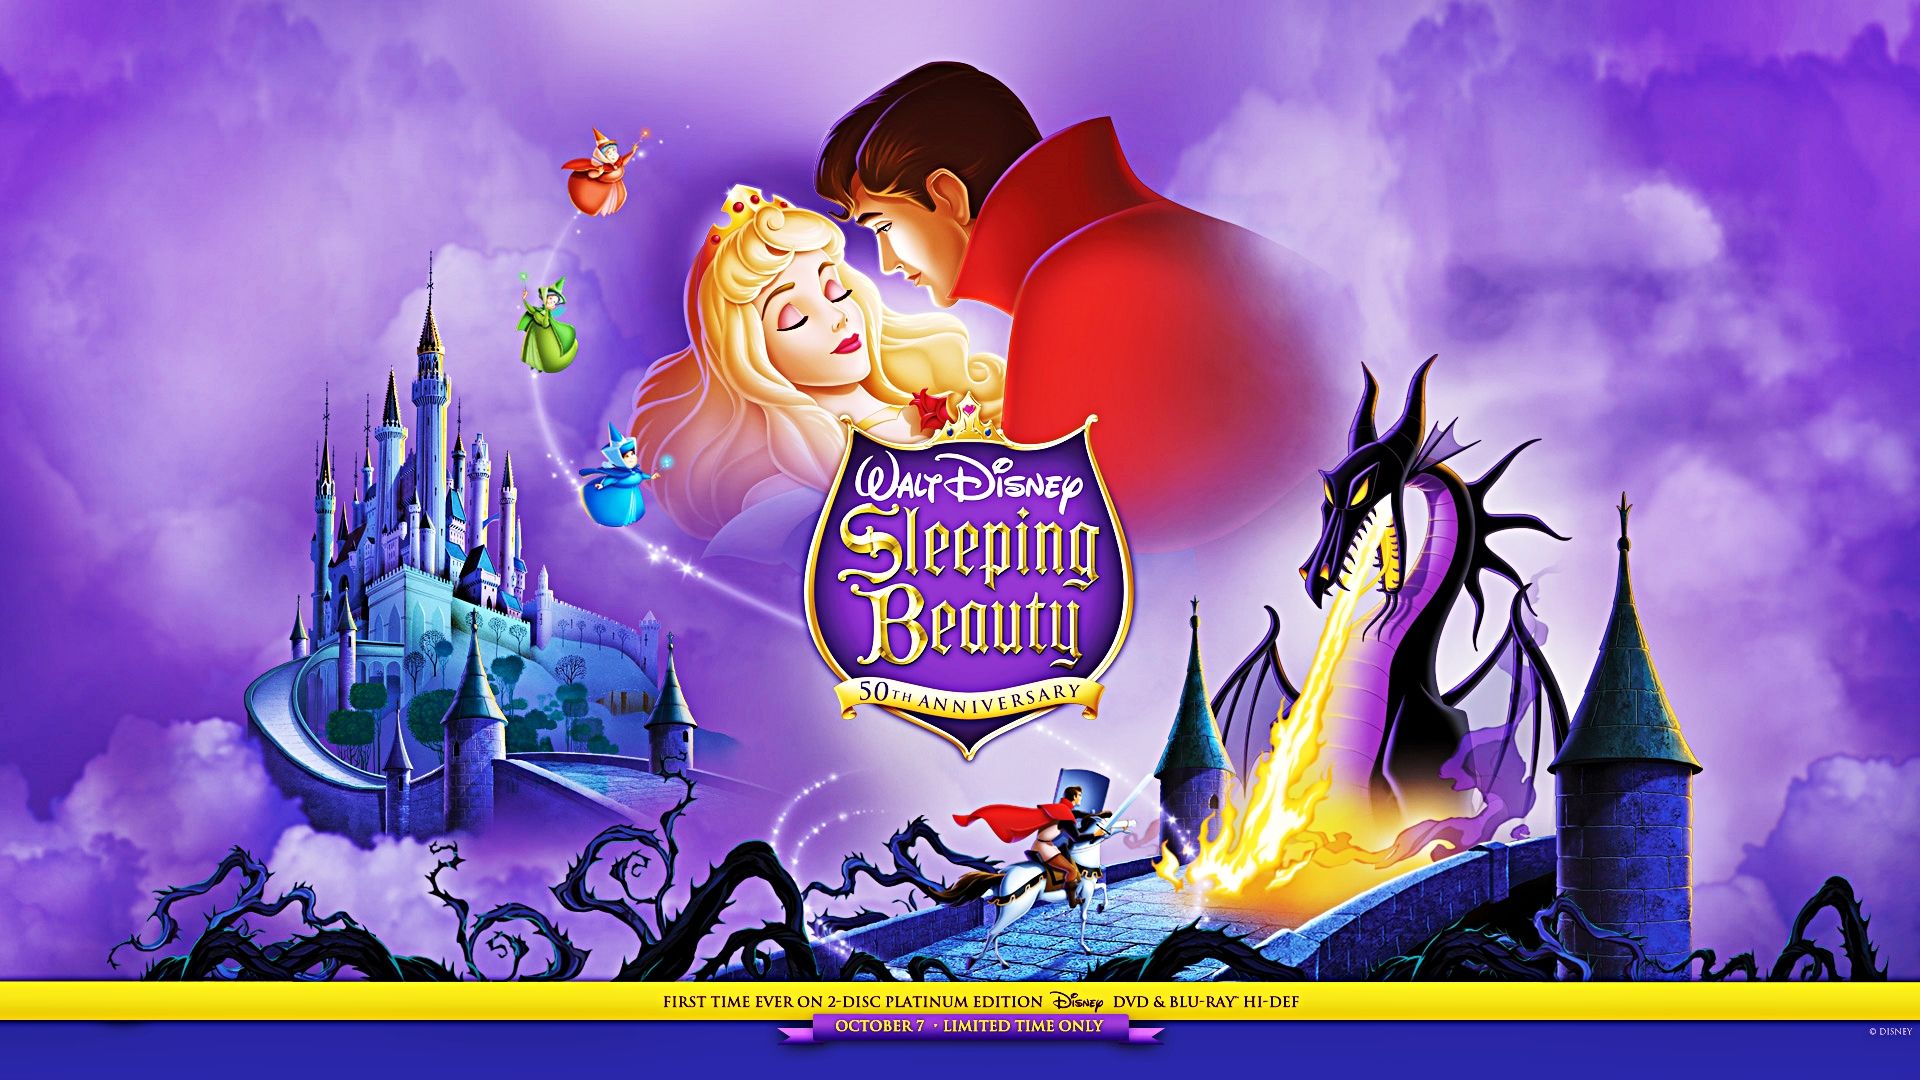 Free download Walt Disney Wallpapers Sleeping Beauty Walt Disney.